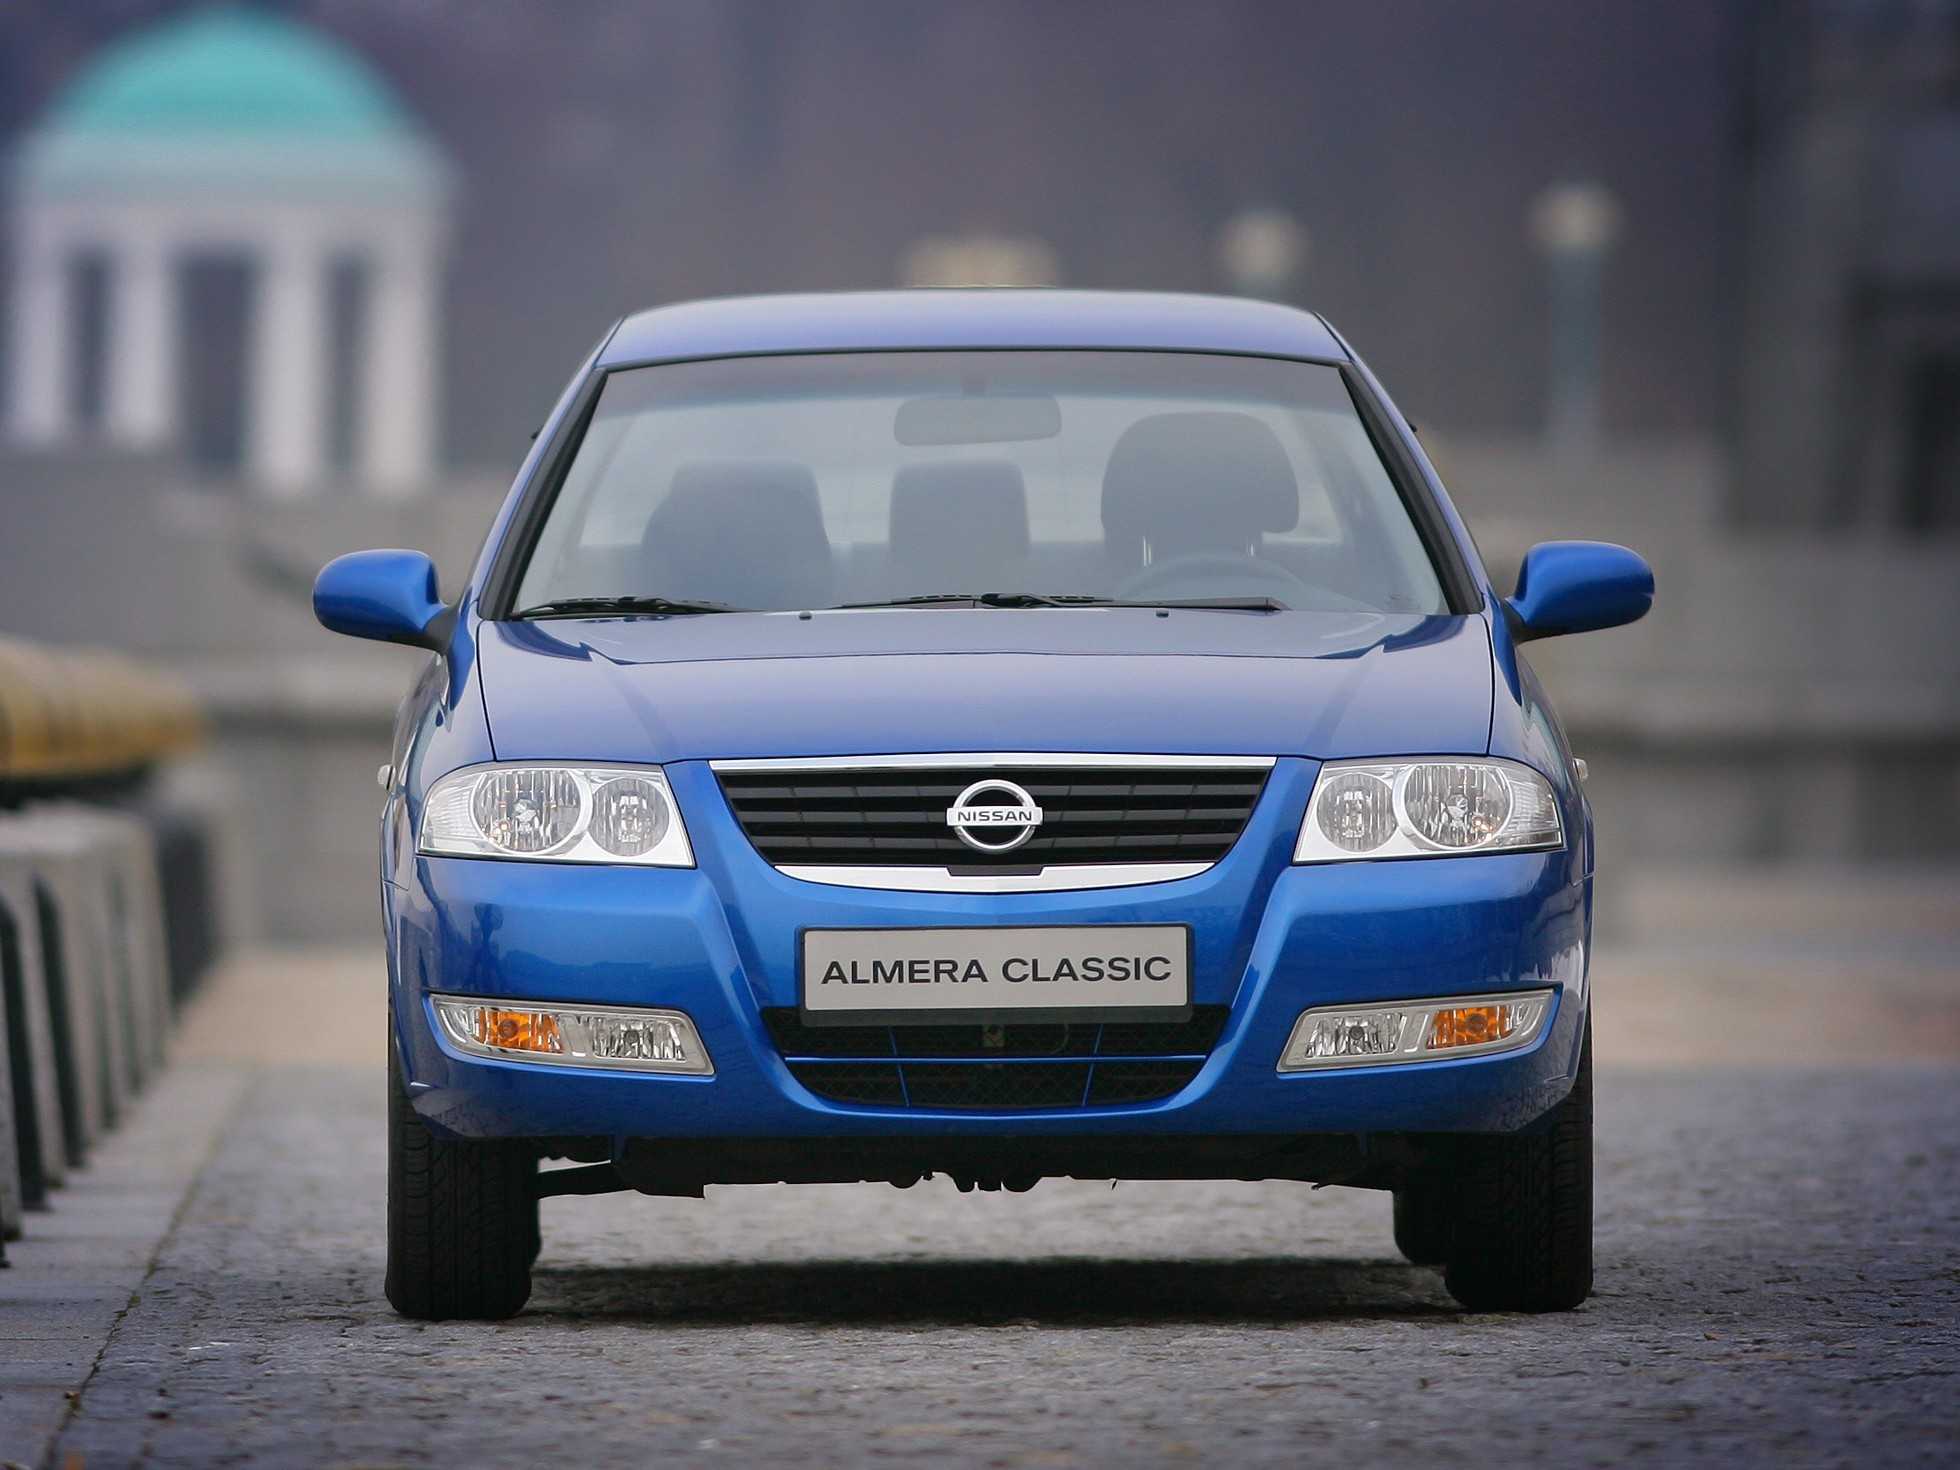 Отзывы реальных владельцев Nissan Almera, описание достоинств и недостатков